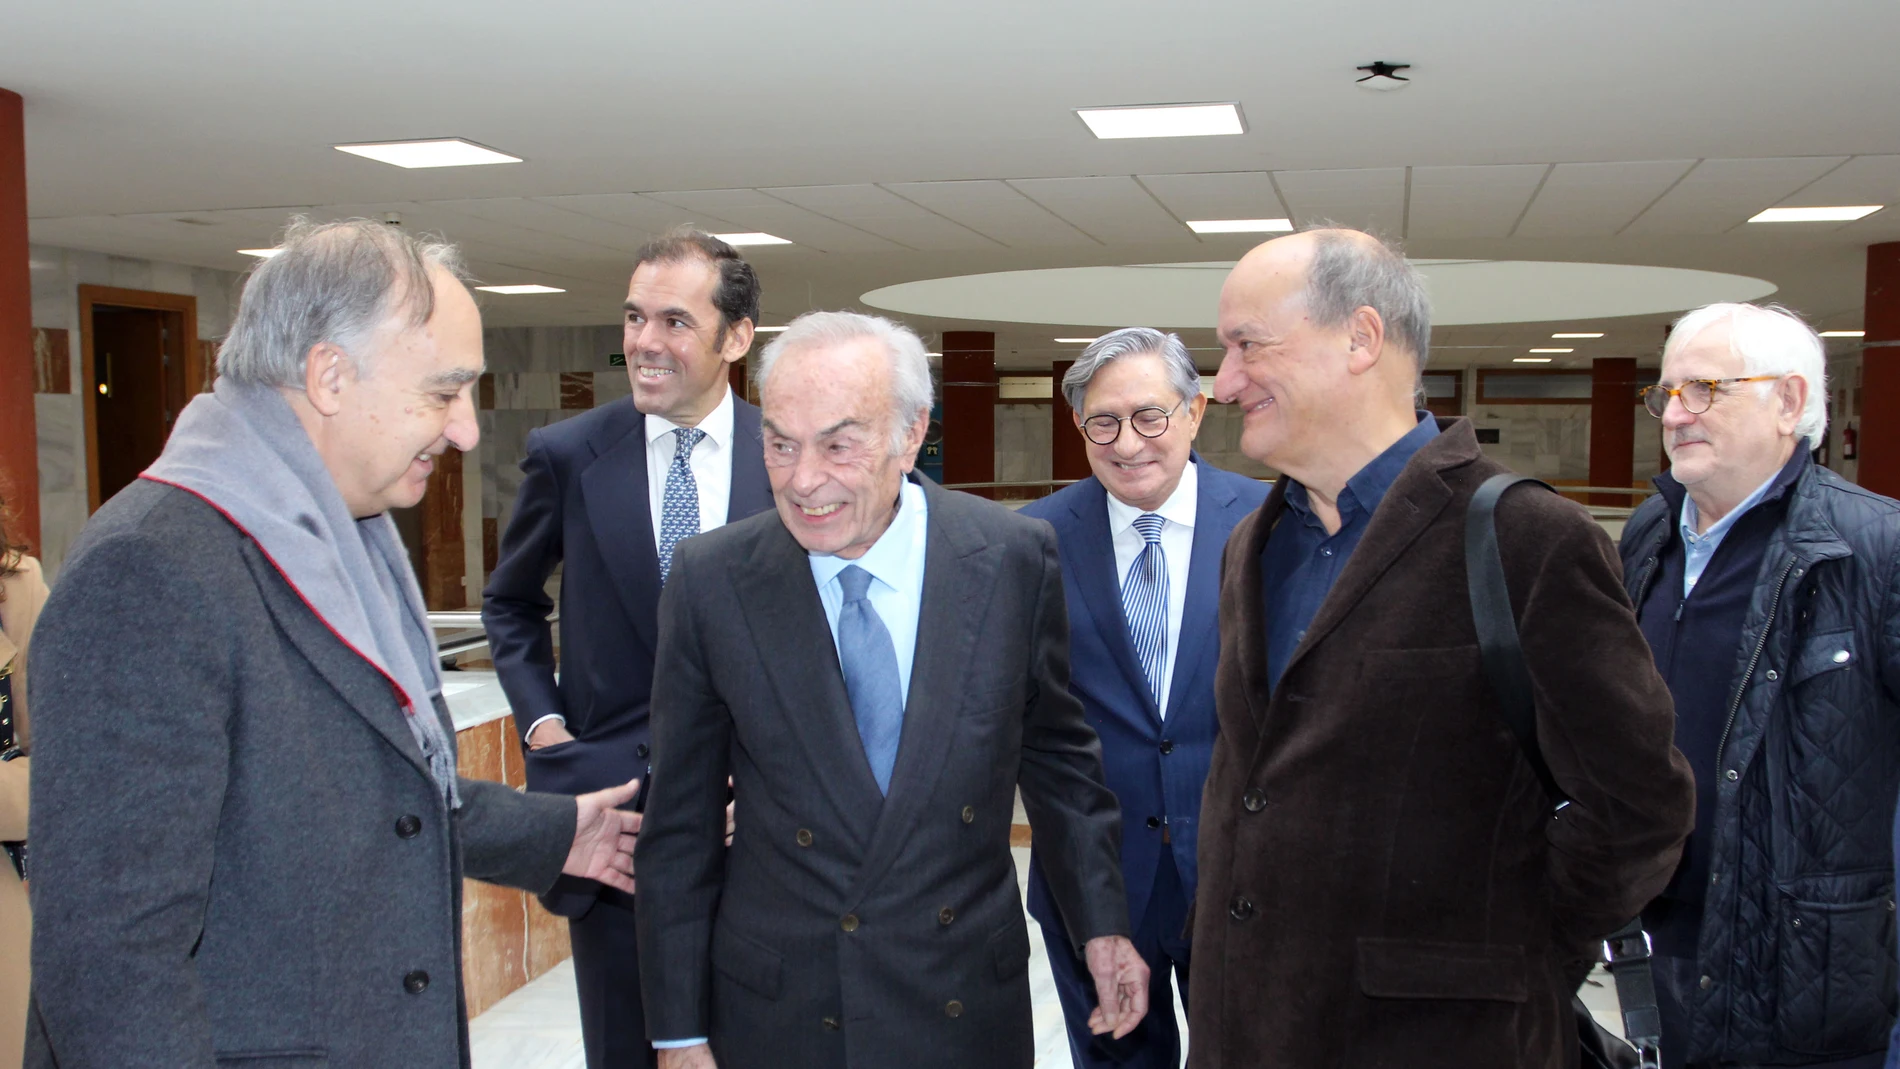 El Duque de Soria, Don Carlos Zurita, saluda al rector Antonio Largo, en presencia de Rafael Benjumea y Martín Garzo